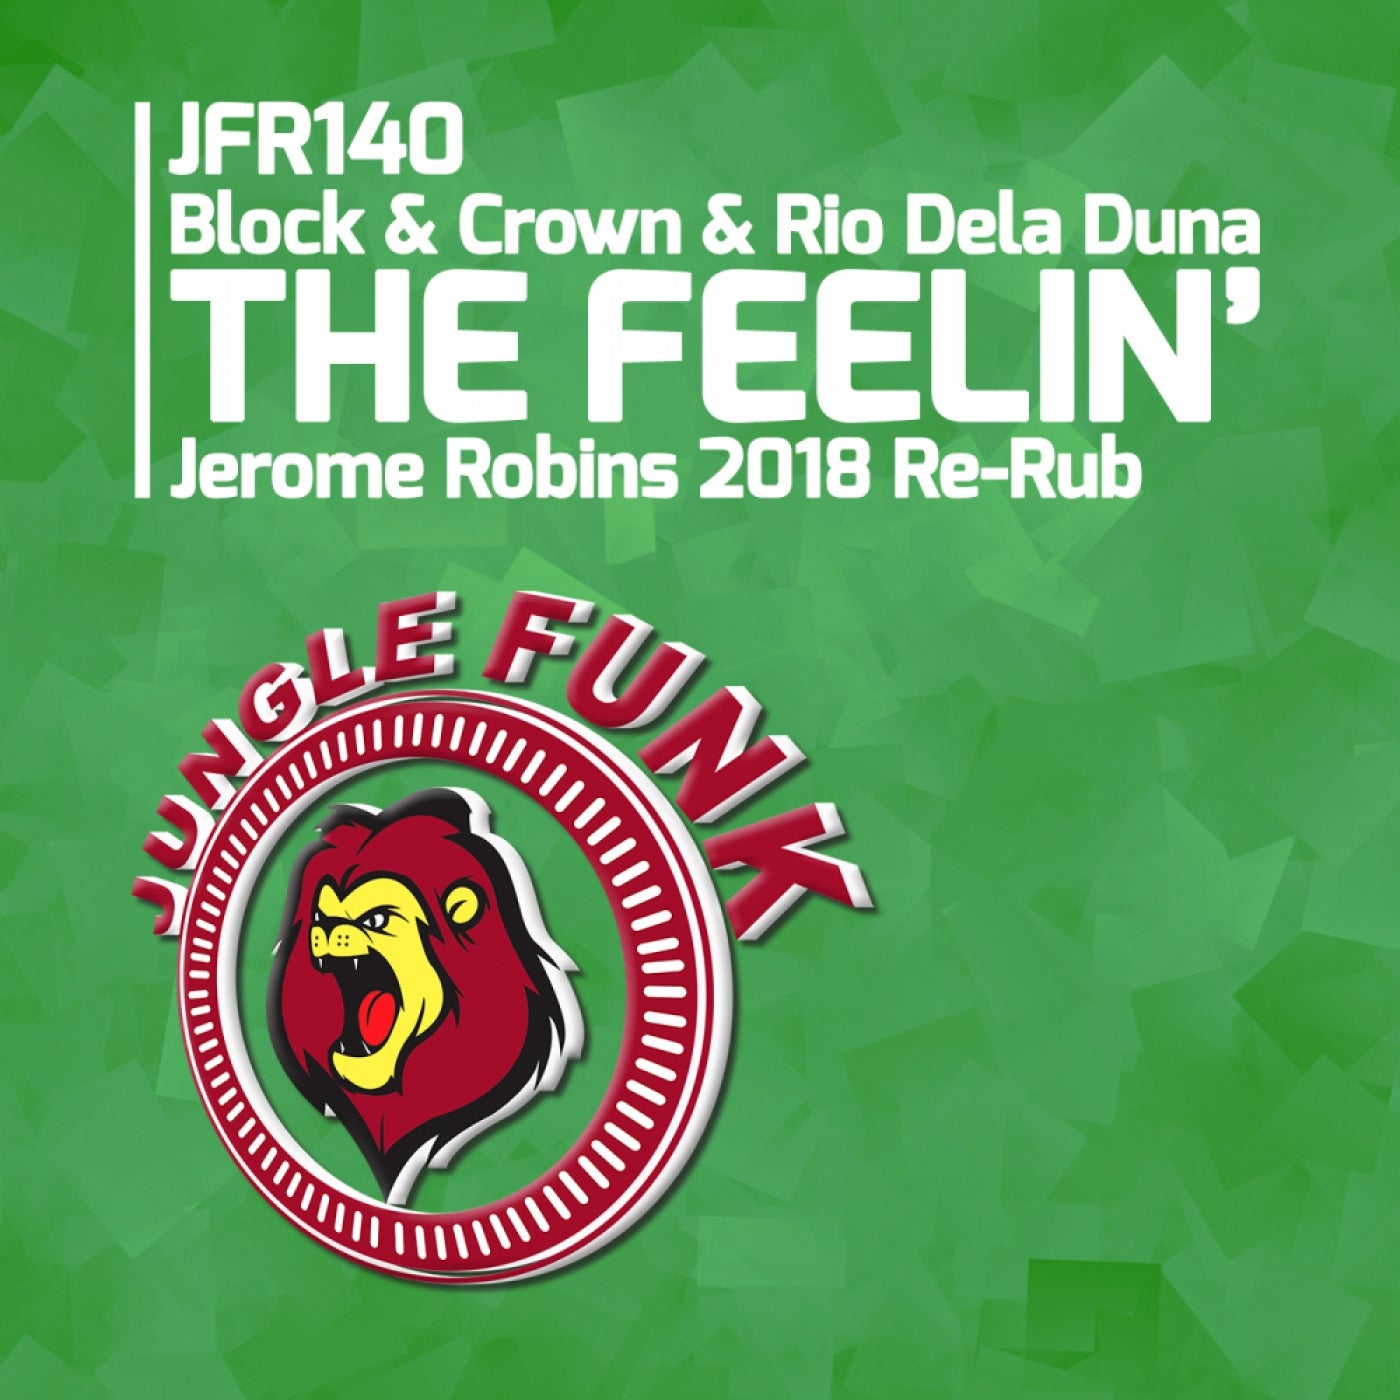 The Feelin' (Jerome Robins 2018 Re-Rub)